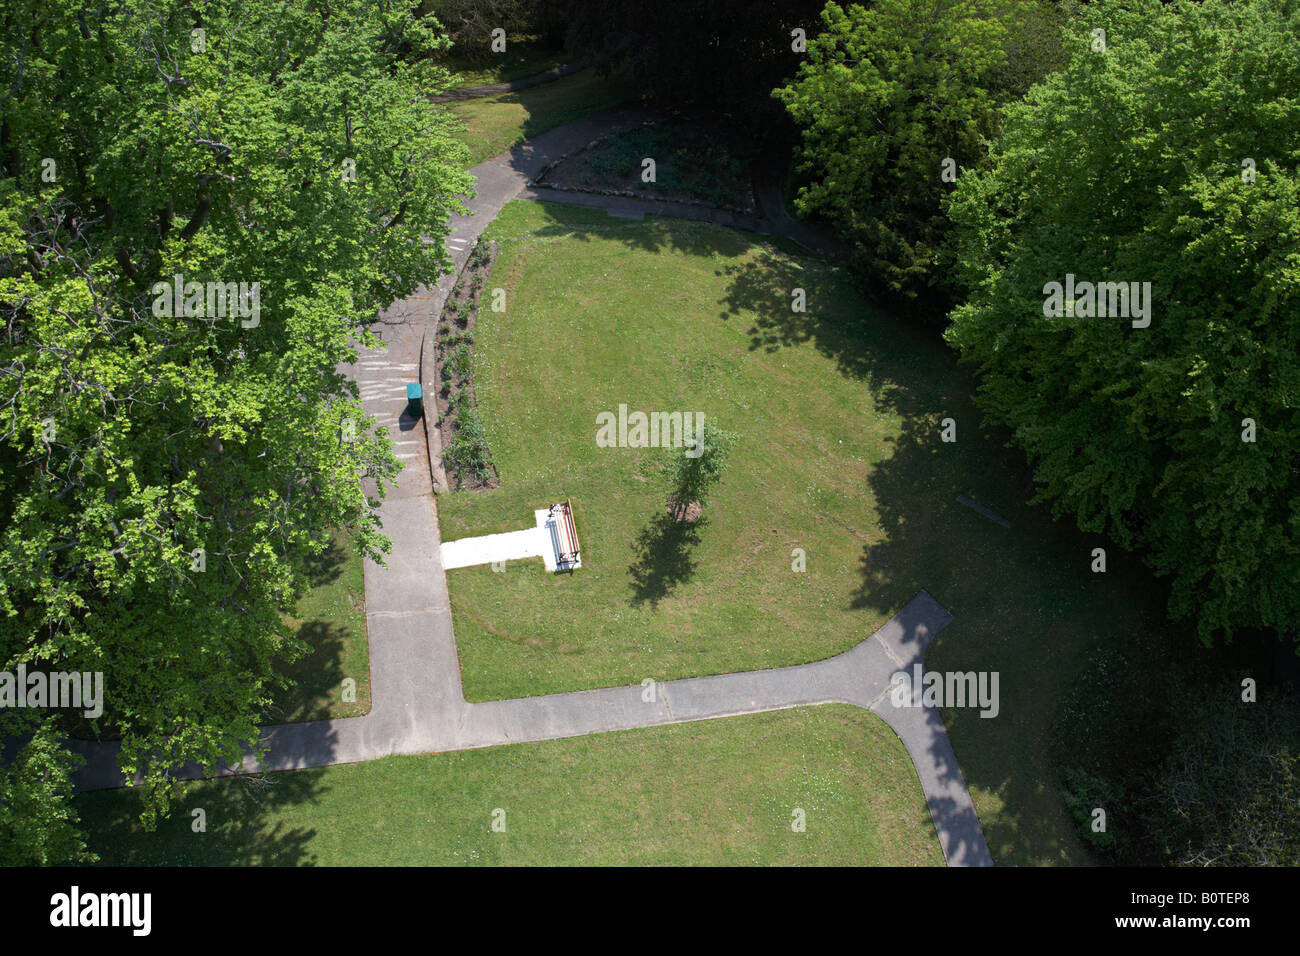 Luftbild des Parks von der Coles Denkmal einschließlich weg Bank Abfallbehälter Rasenflächen Bäume im Park forthill Enniskillen County Fermanagh Stockfoto